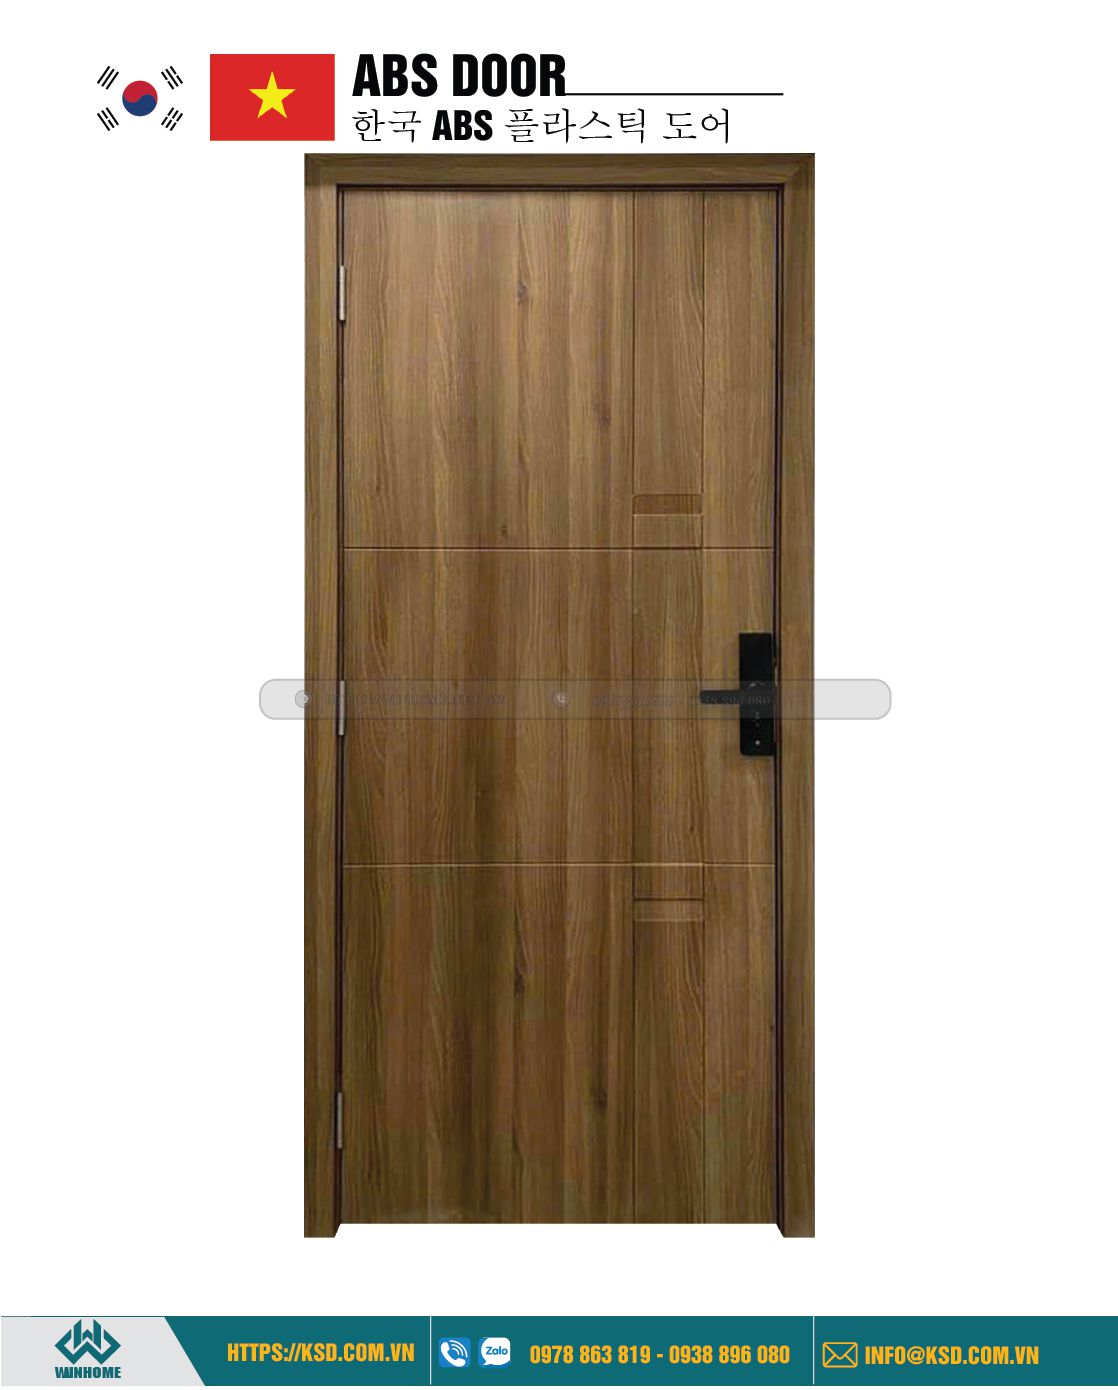 ABS Door KSD 116 K1129